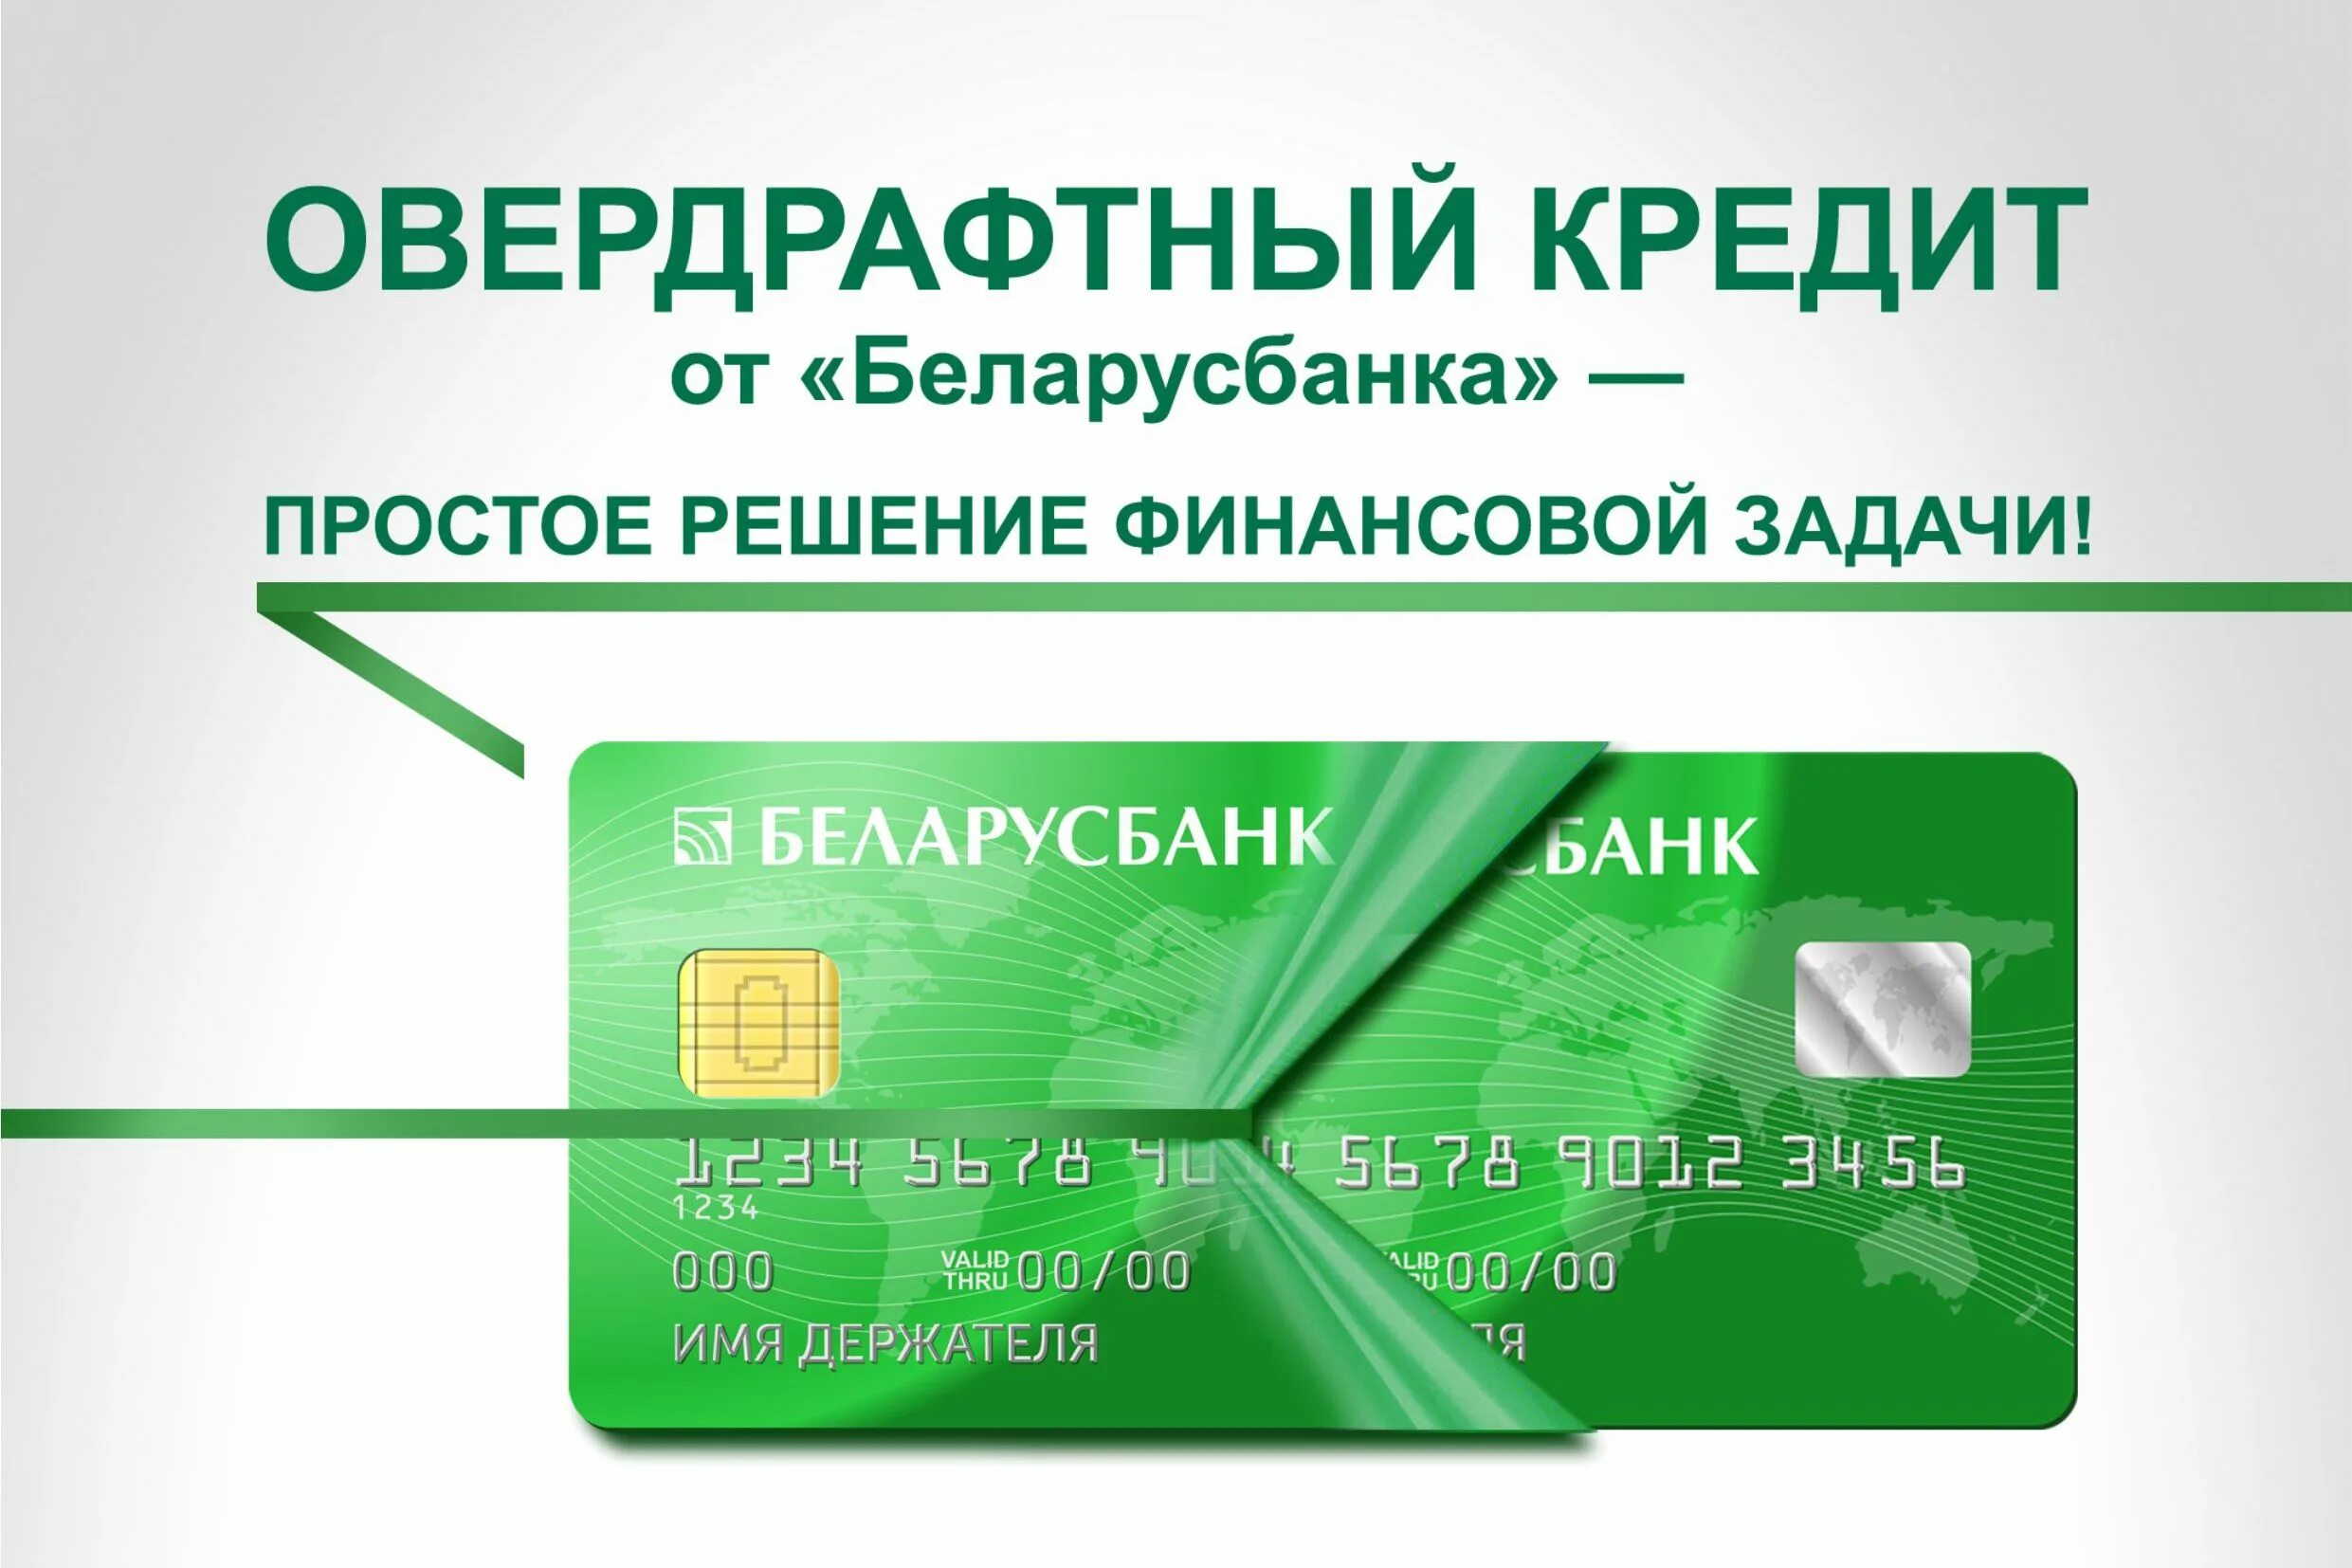 Беларусбанк дает кредиты. Новые банковские продукты. Карта с овердрафтом Сбербанк. Кредитные программы. Овердрафт и кредитная линия отличия.